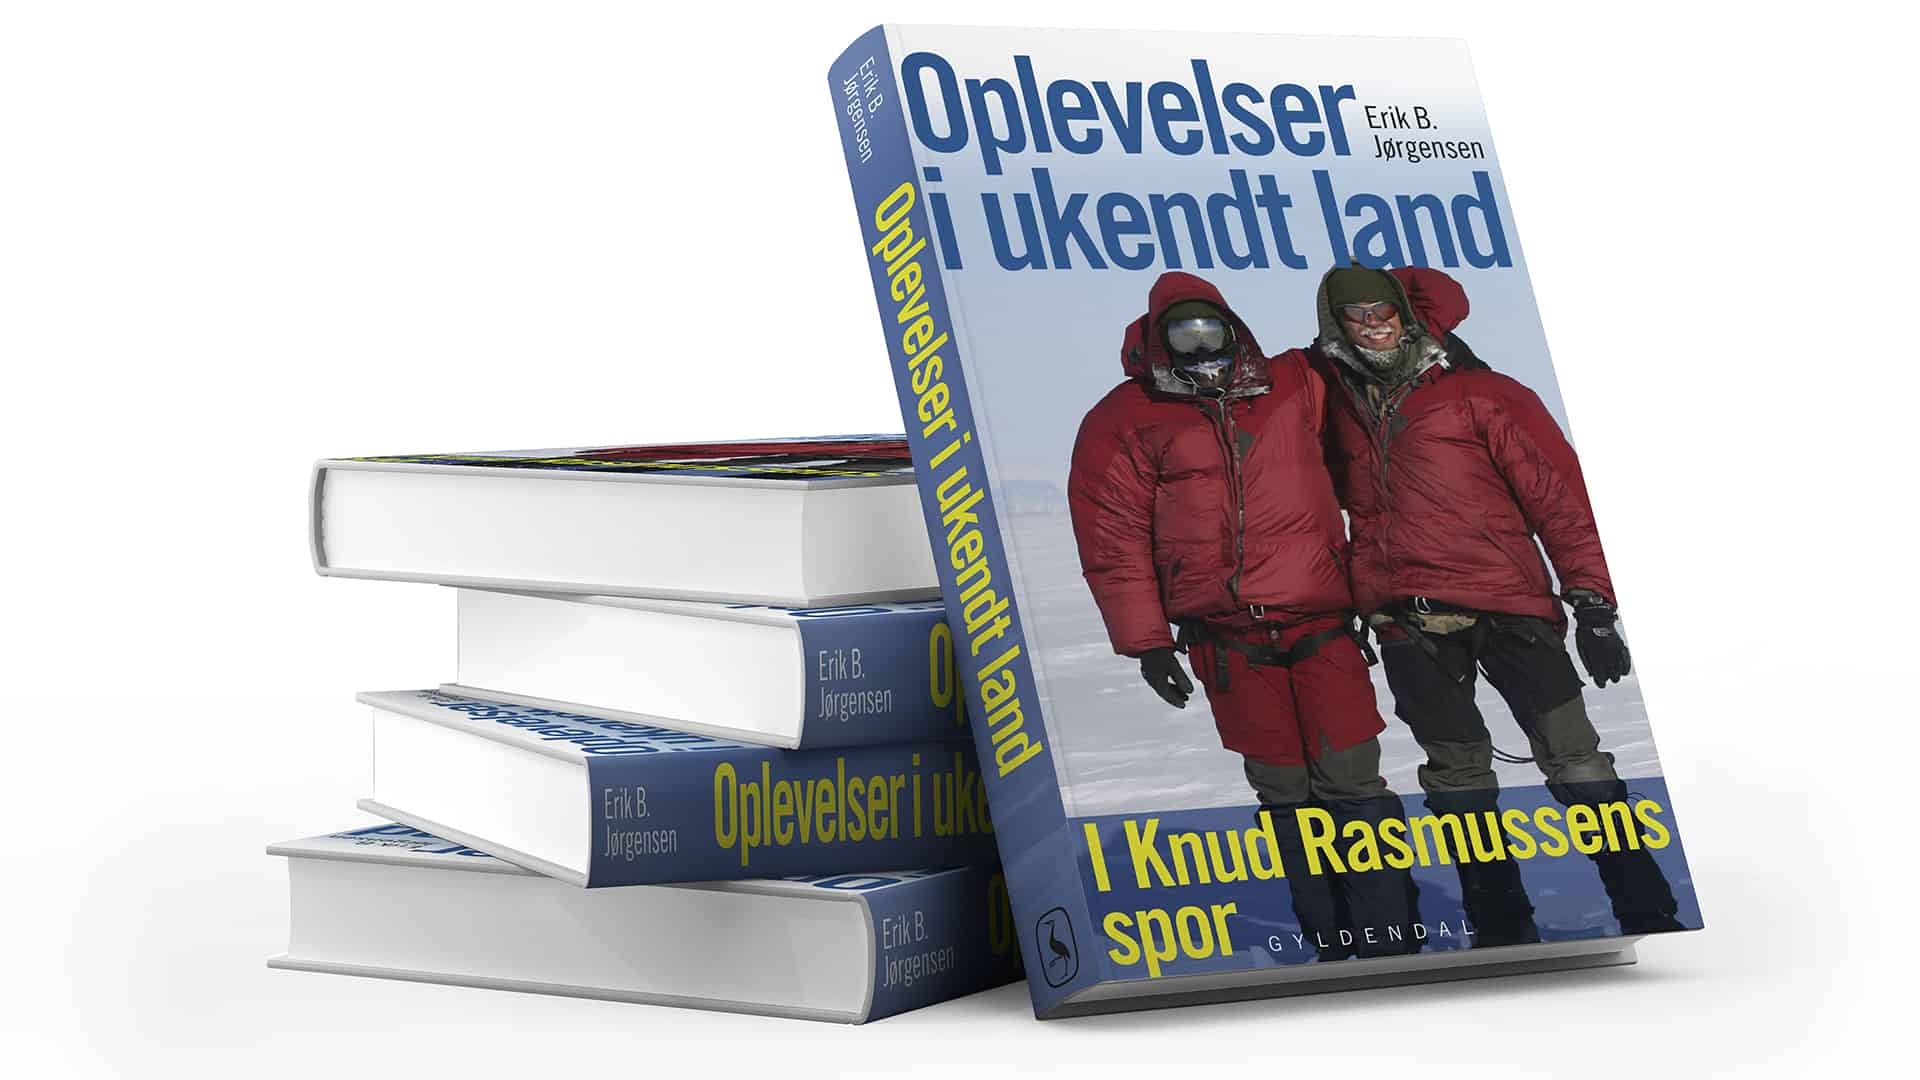 1. Thule til Thule ekspedition, foredrag, Erik B. Jørgensen, bog Oplevelser i ukendt land, i Knud Rasmussens spor